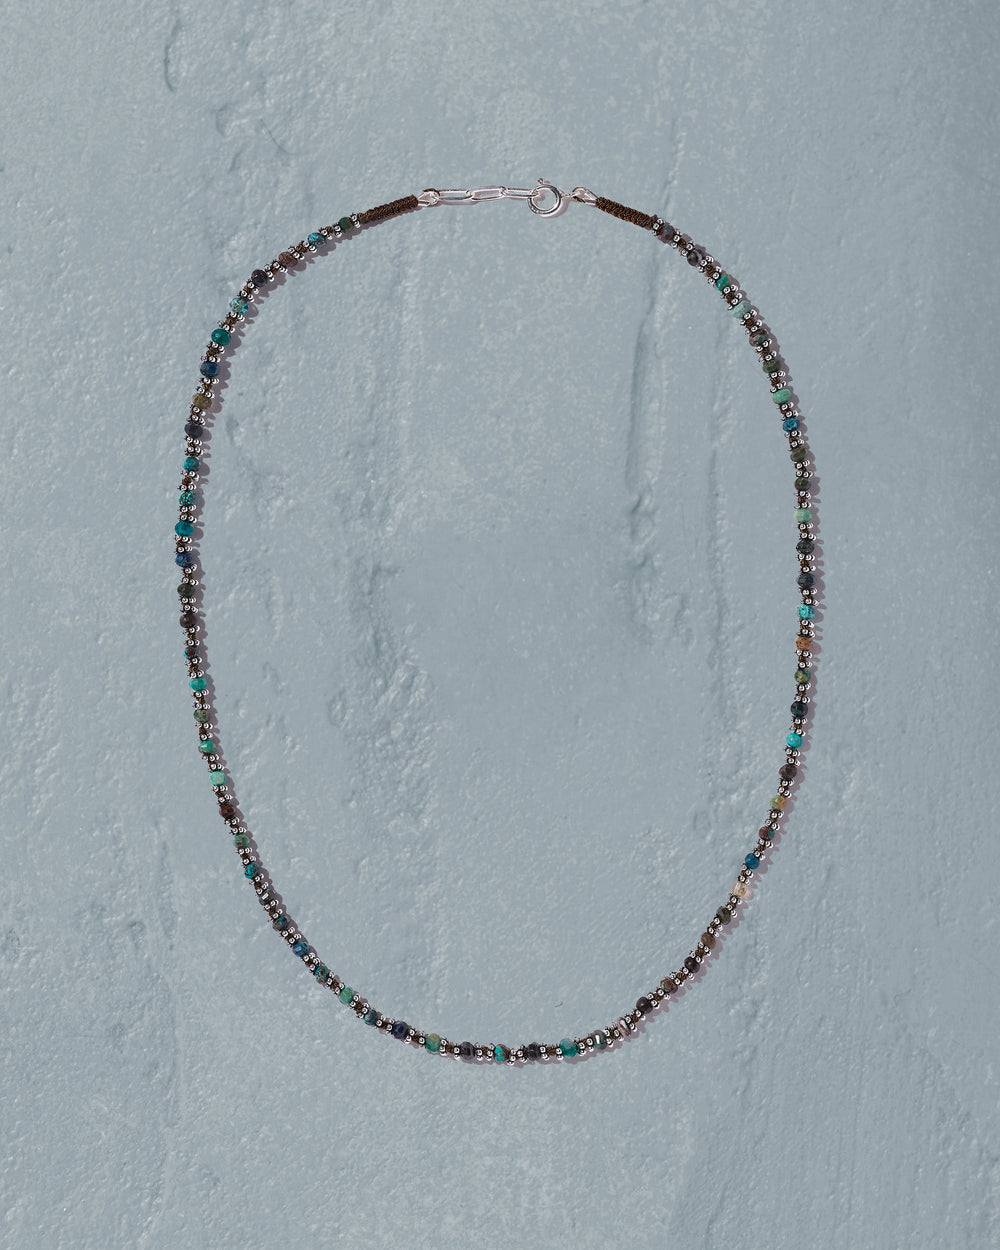 Kala necklace